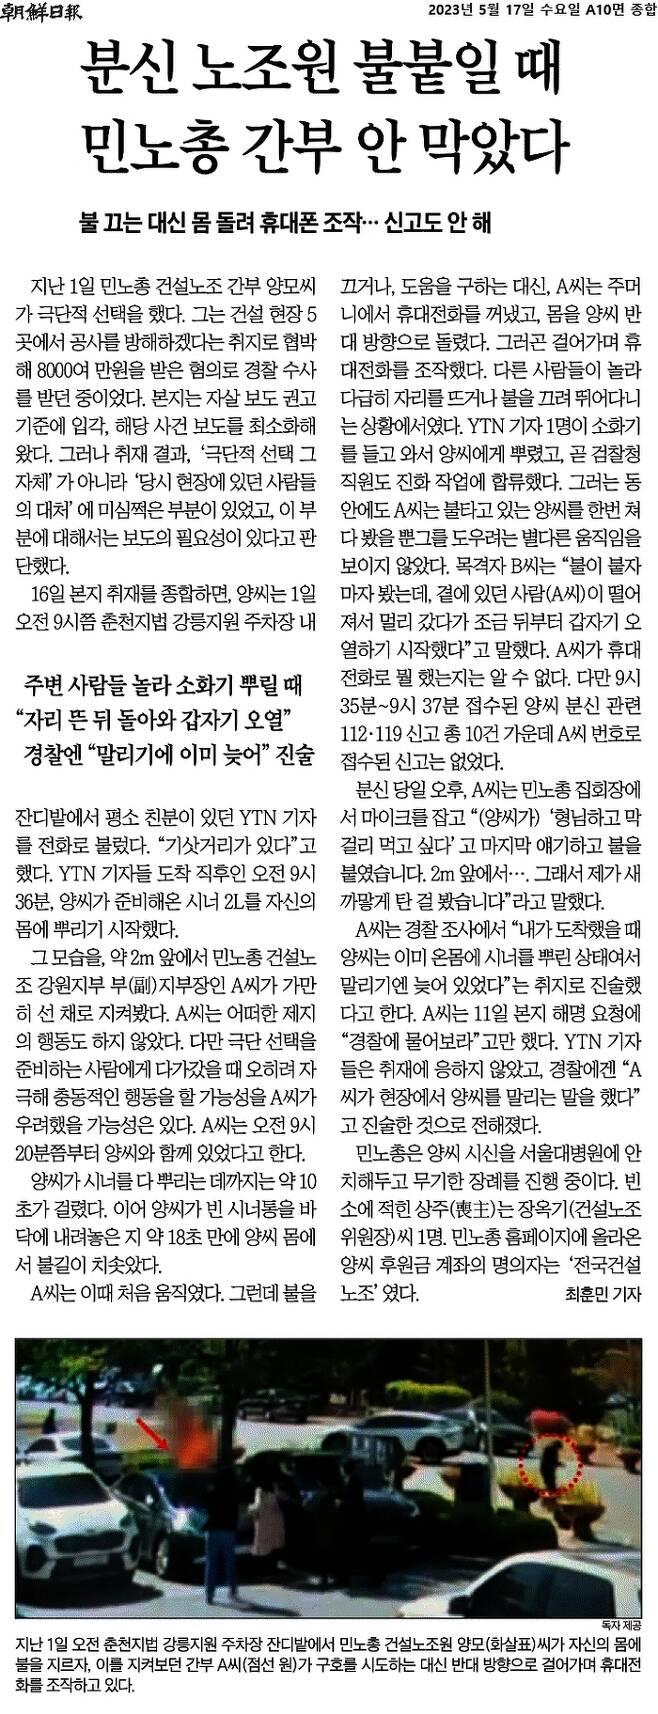 조선일보는 지난 17일 지면에 “분신 노조원 불붙일 때 민노총 간부 안막았다”라는 제목의 기사를 10면에 담았다. 조선일보 갈무리